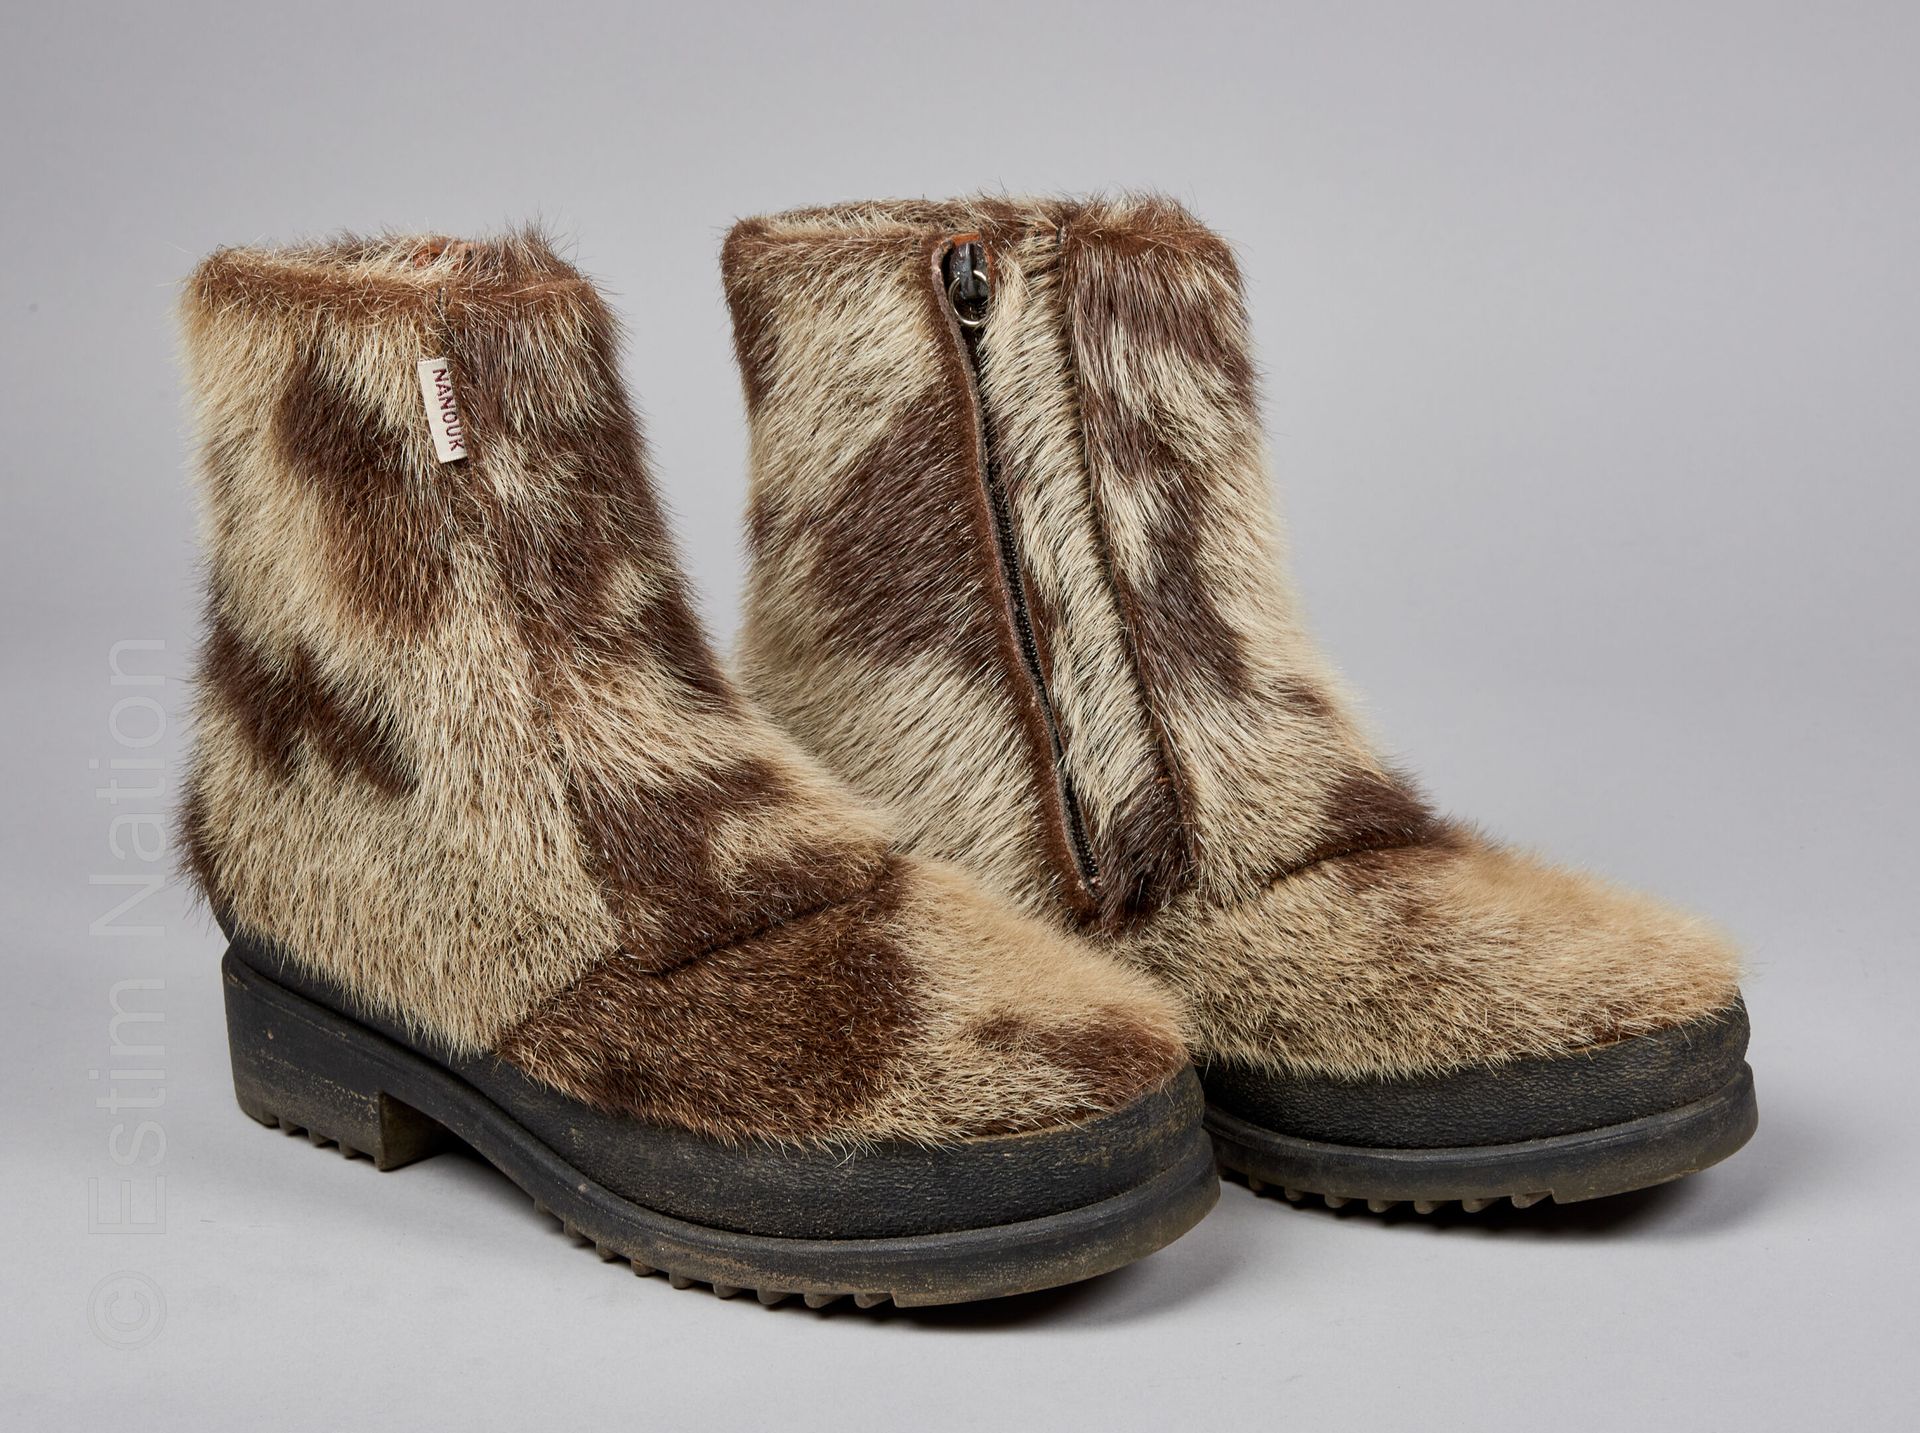 NANOUK CIRCA 1970 Coppia di stivali da neve di foca anellata, suole composite (P&hellip;